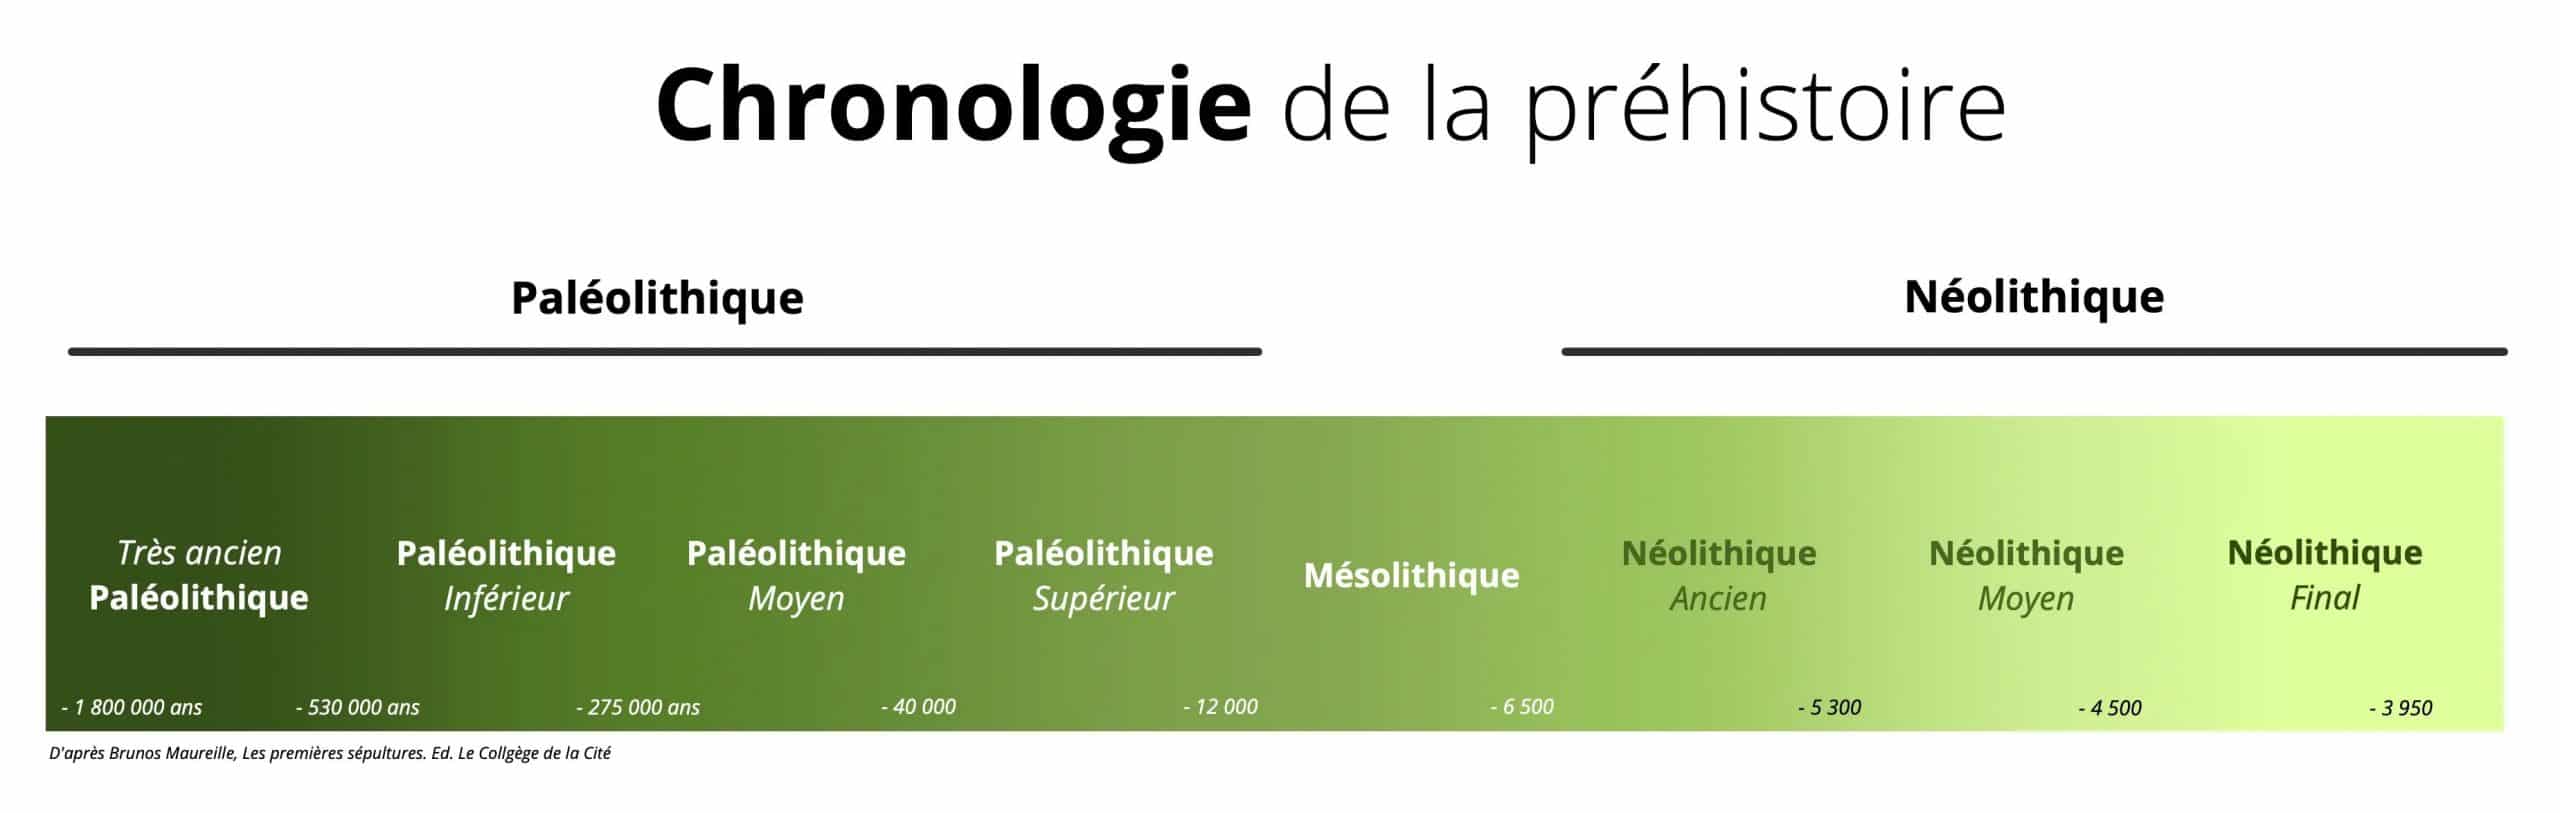 chronologie de la préhistoire